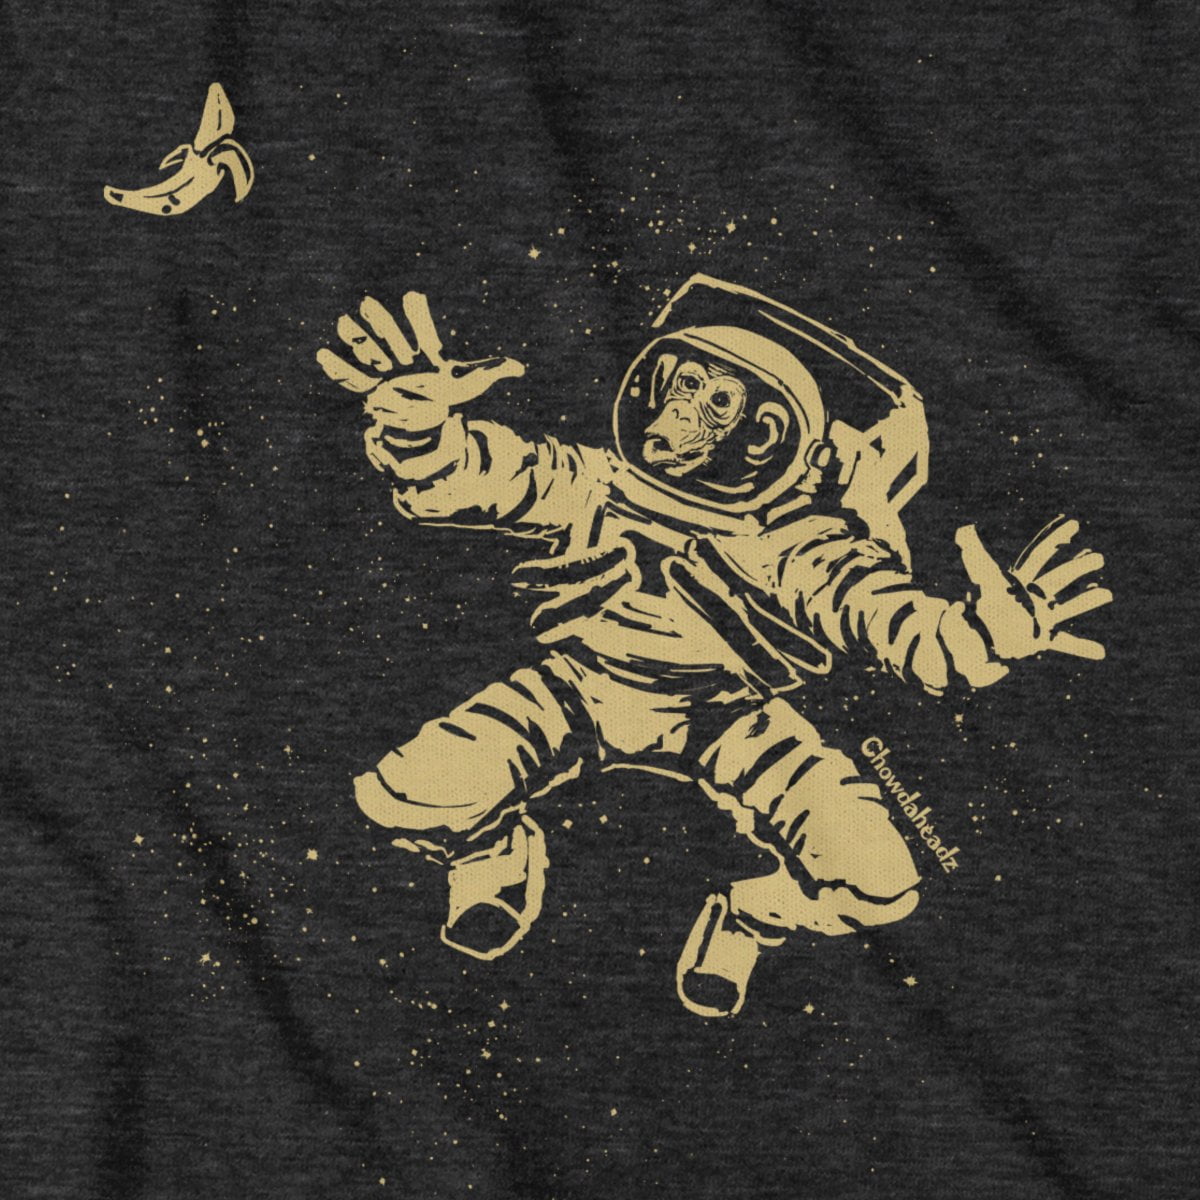 Space Monkey T-Shirt - Chowdaheadz